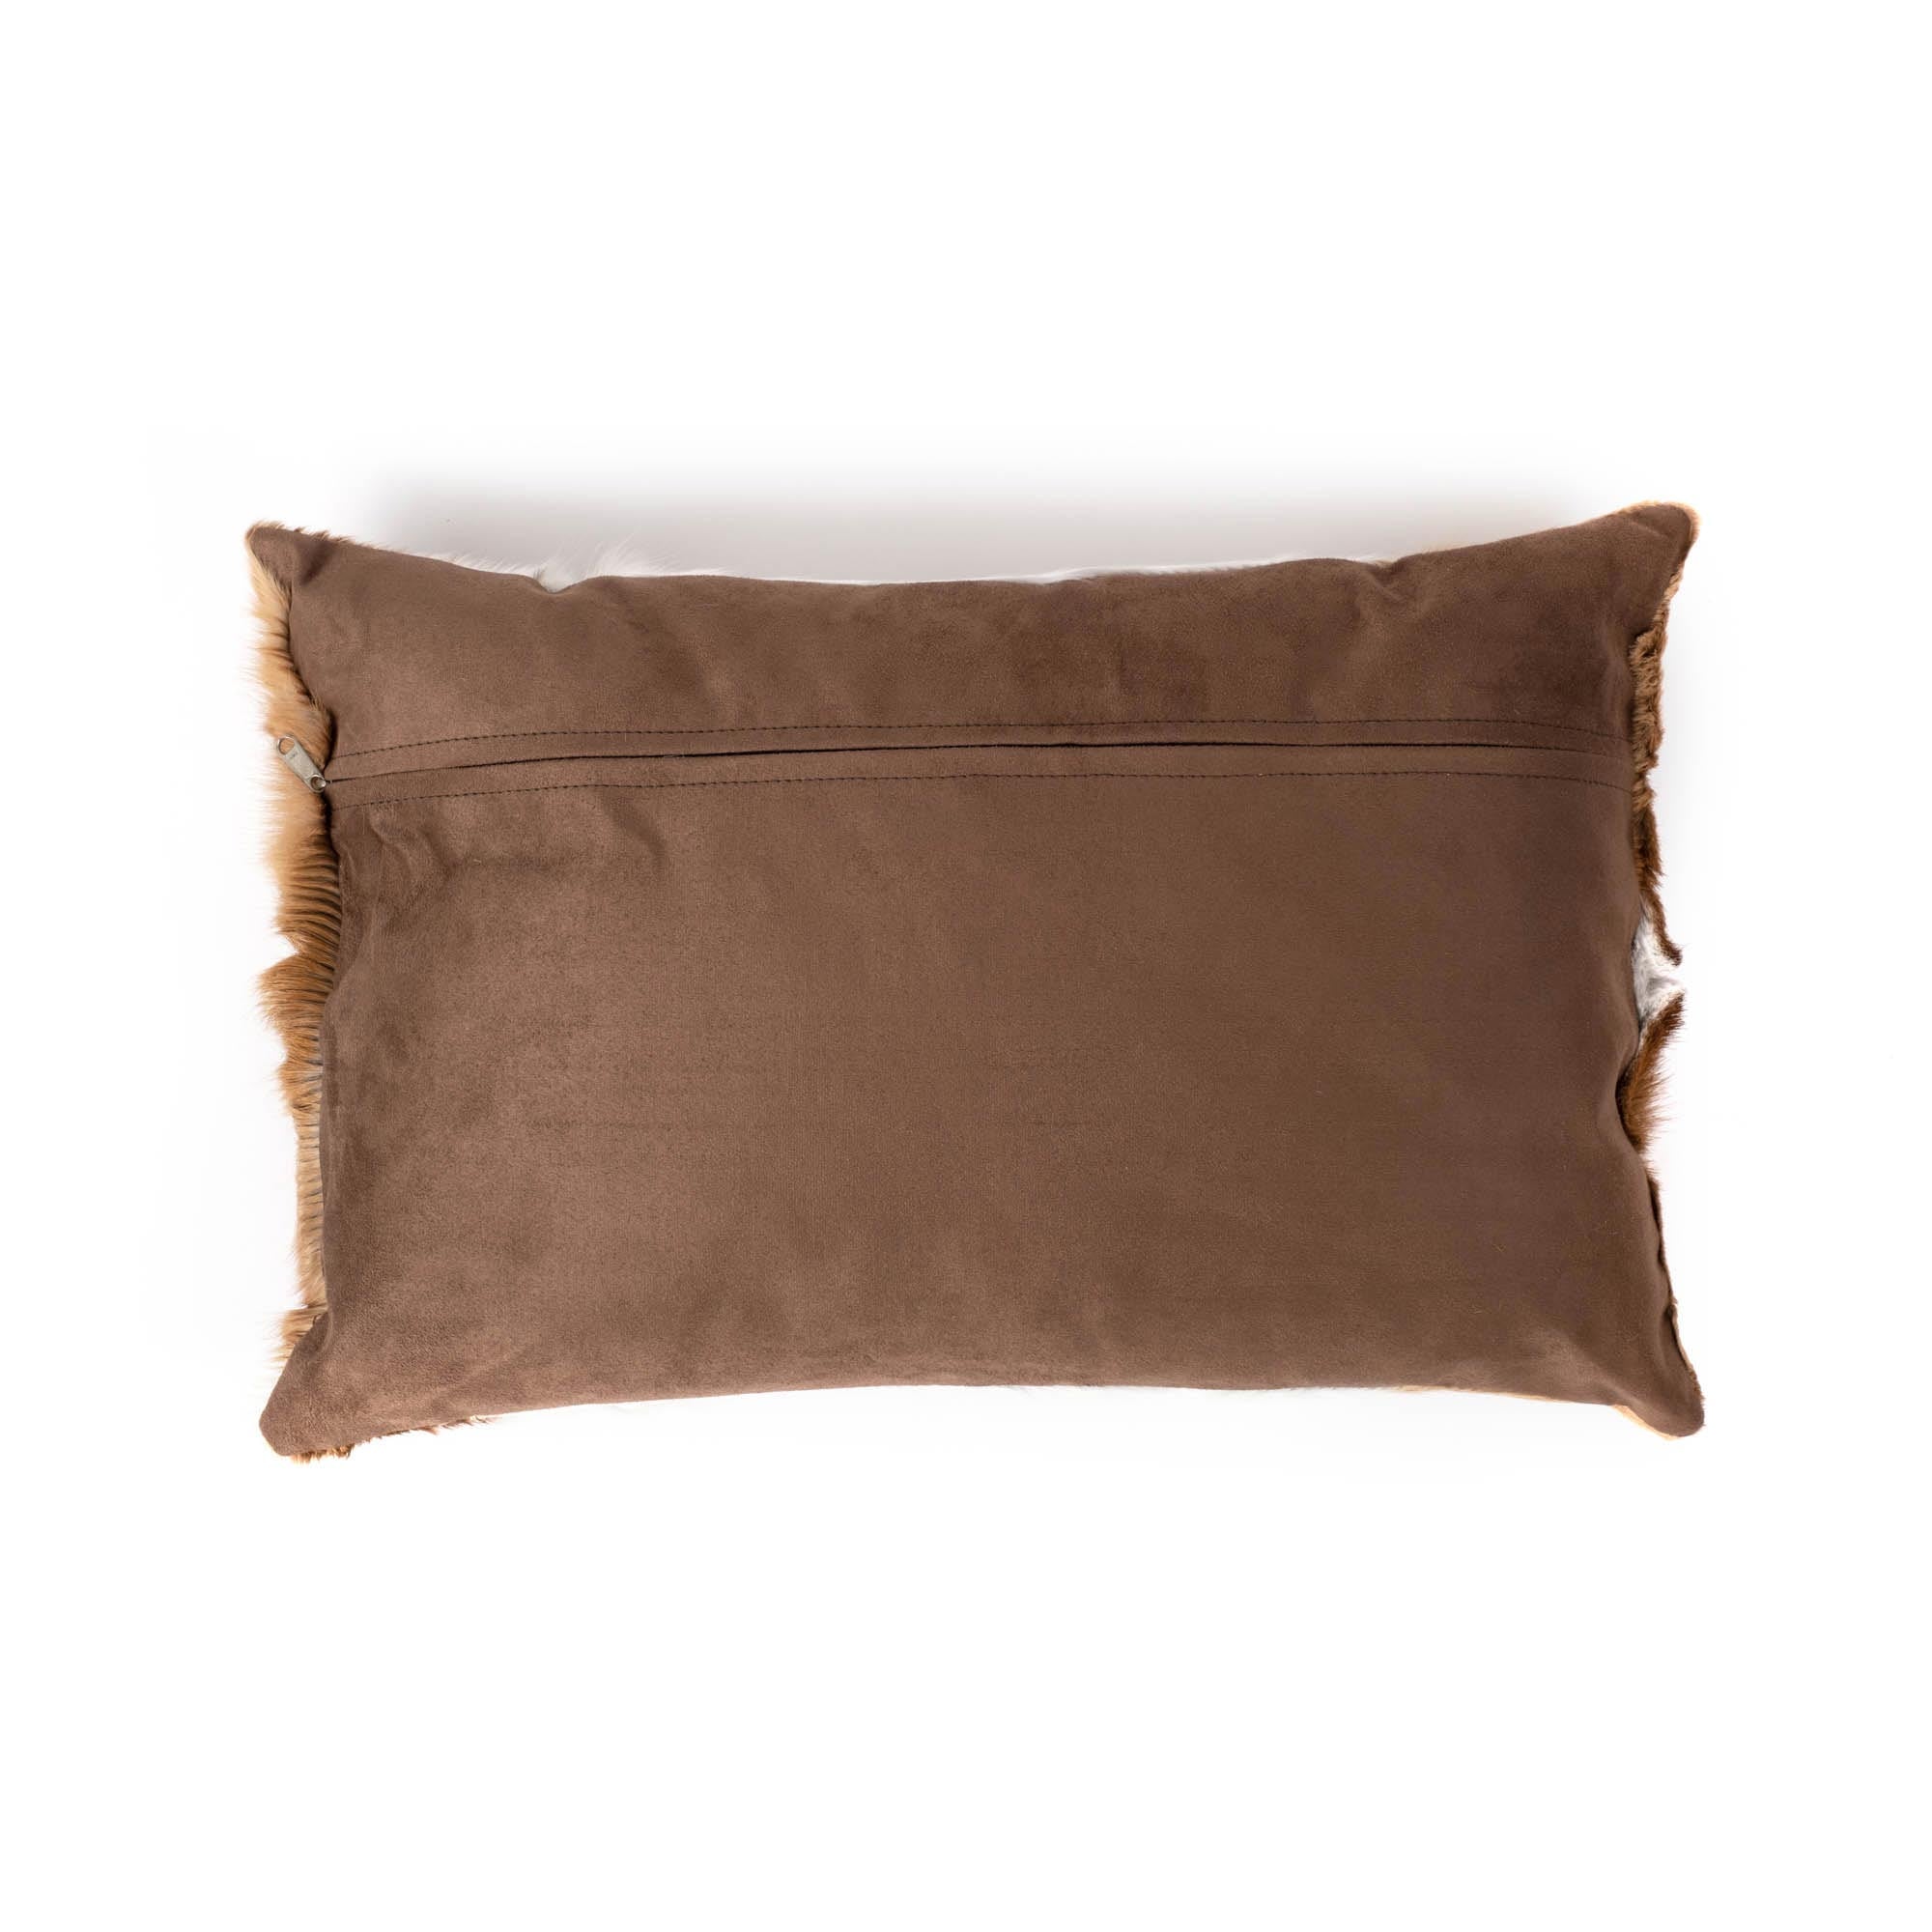 Springbok Hide Pillow